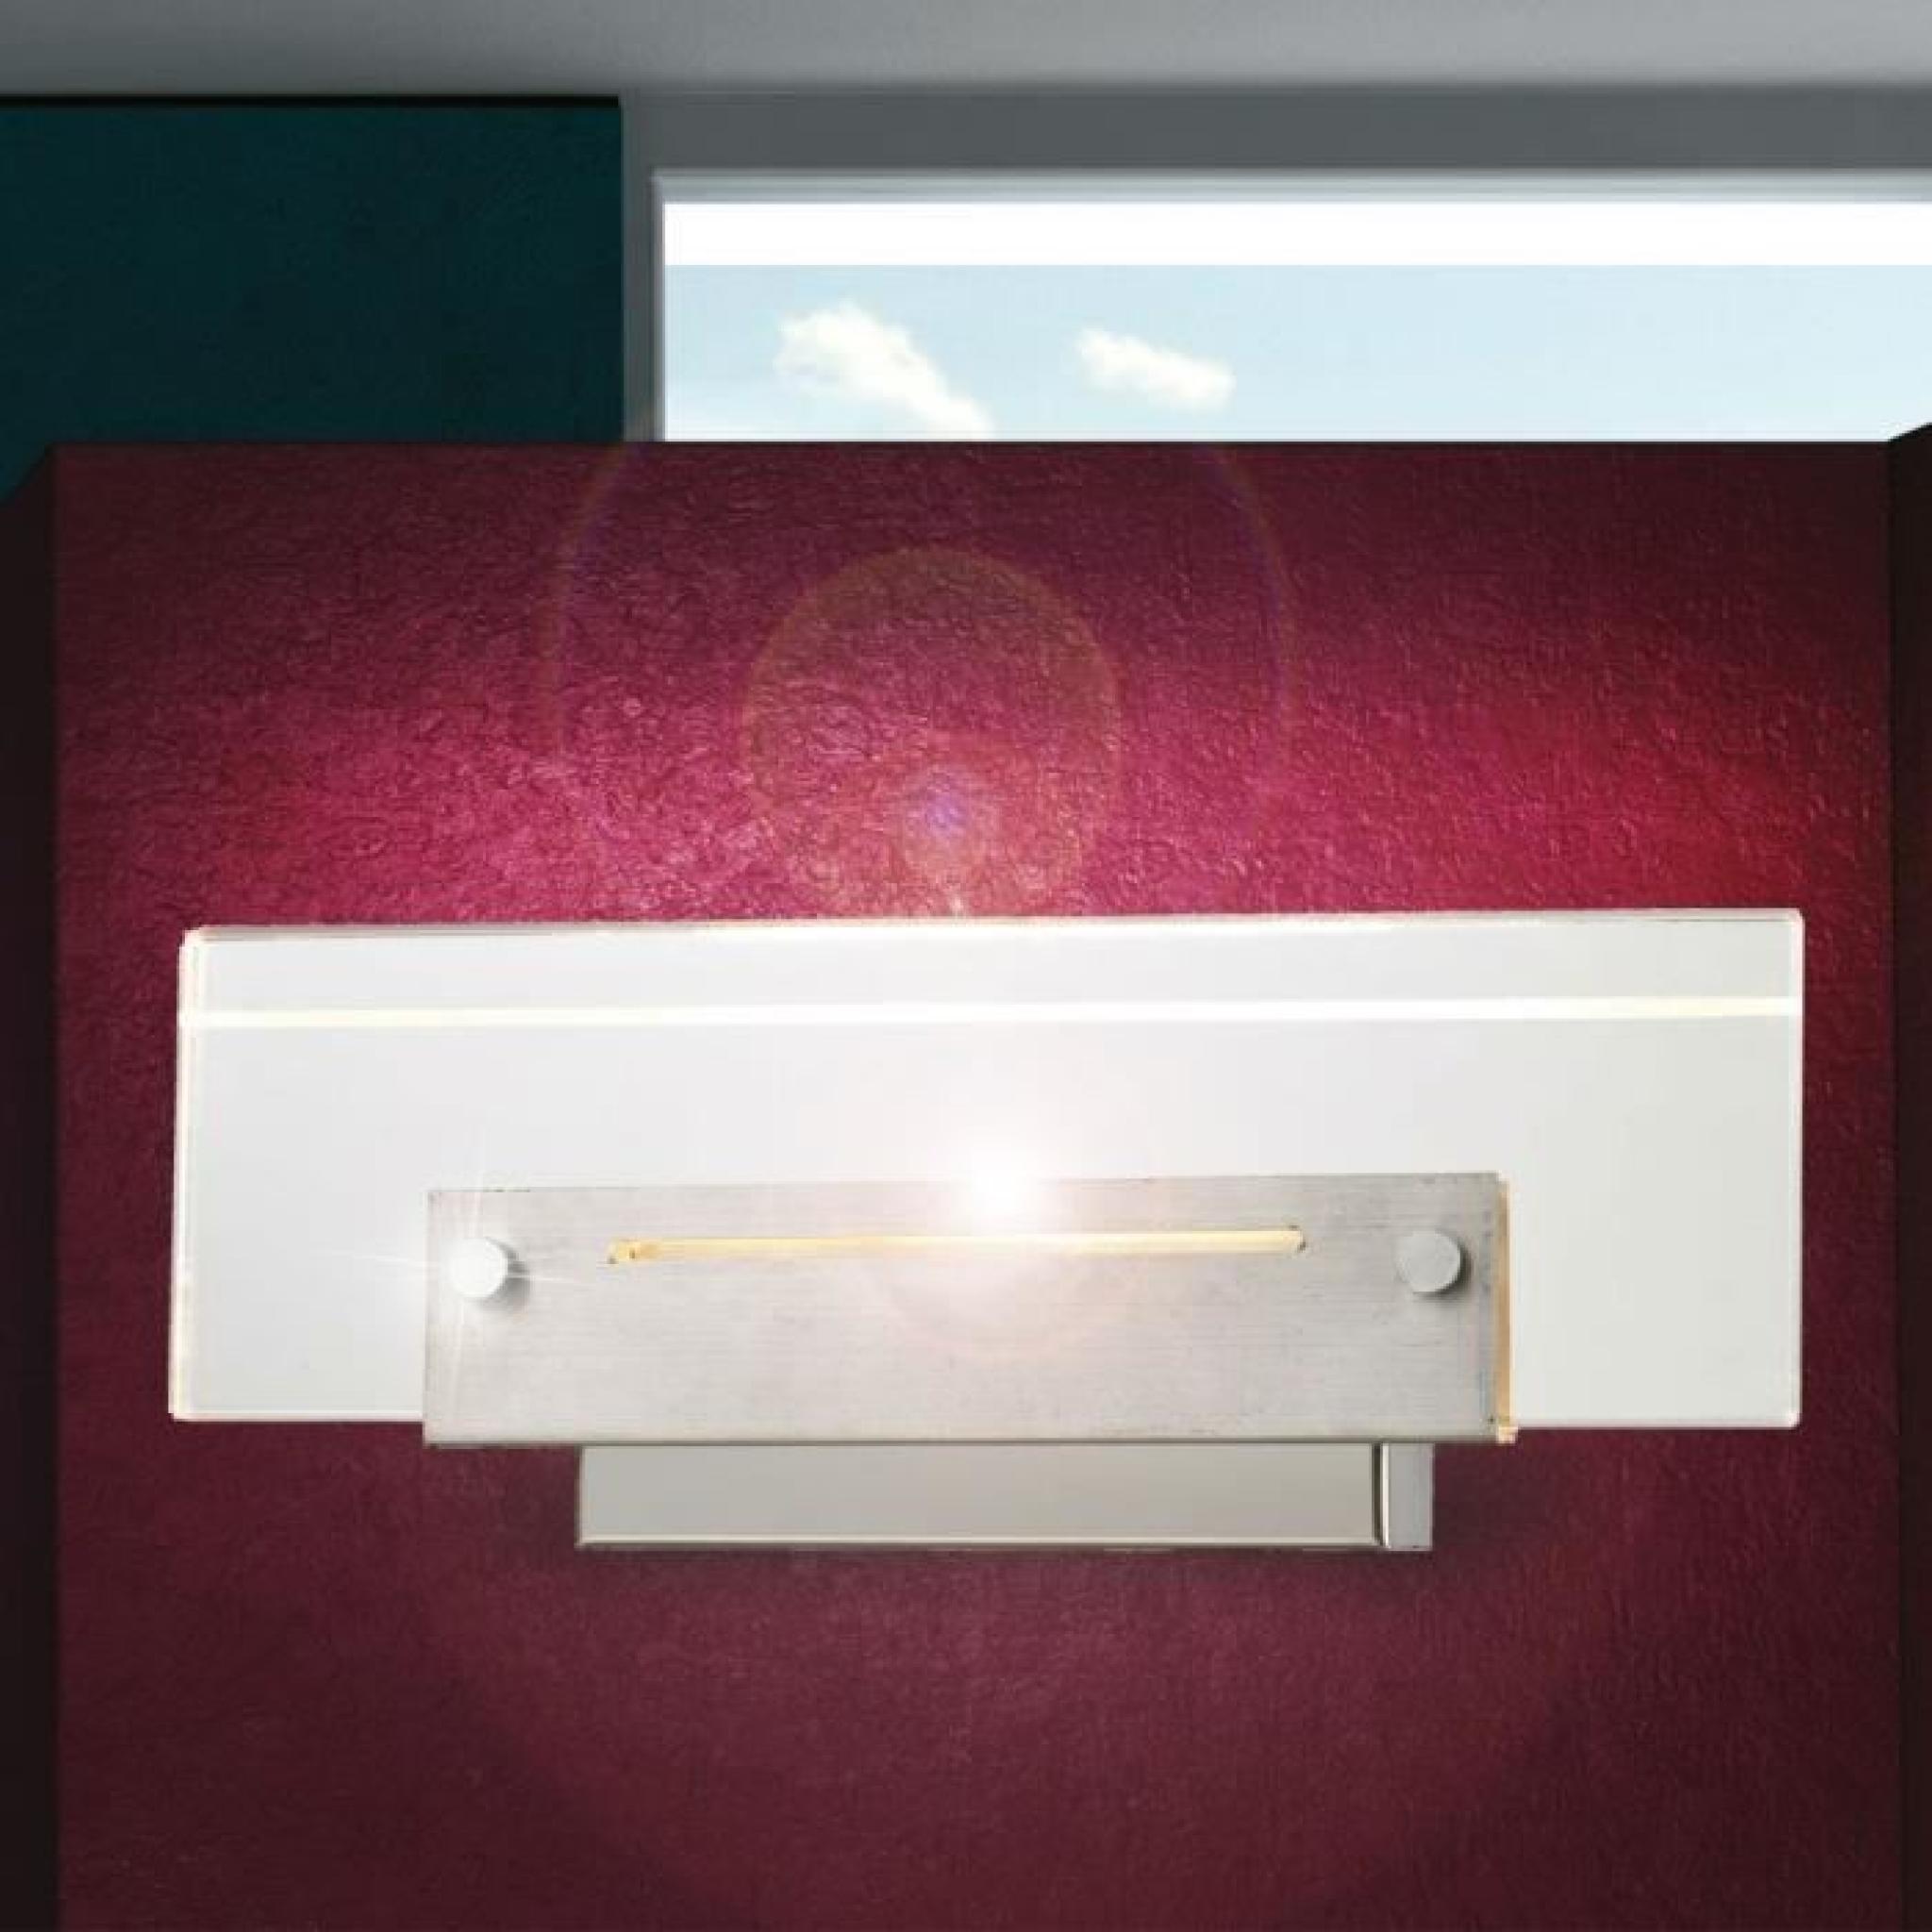 Applique luminaire mural lampe DEL 6 watts éclairage chrome couloir salle de bains pas cher